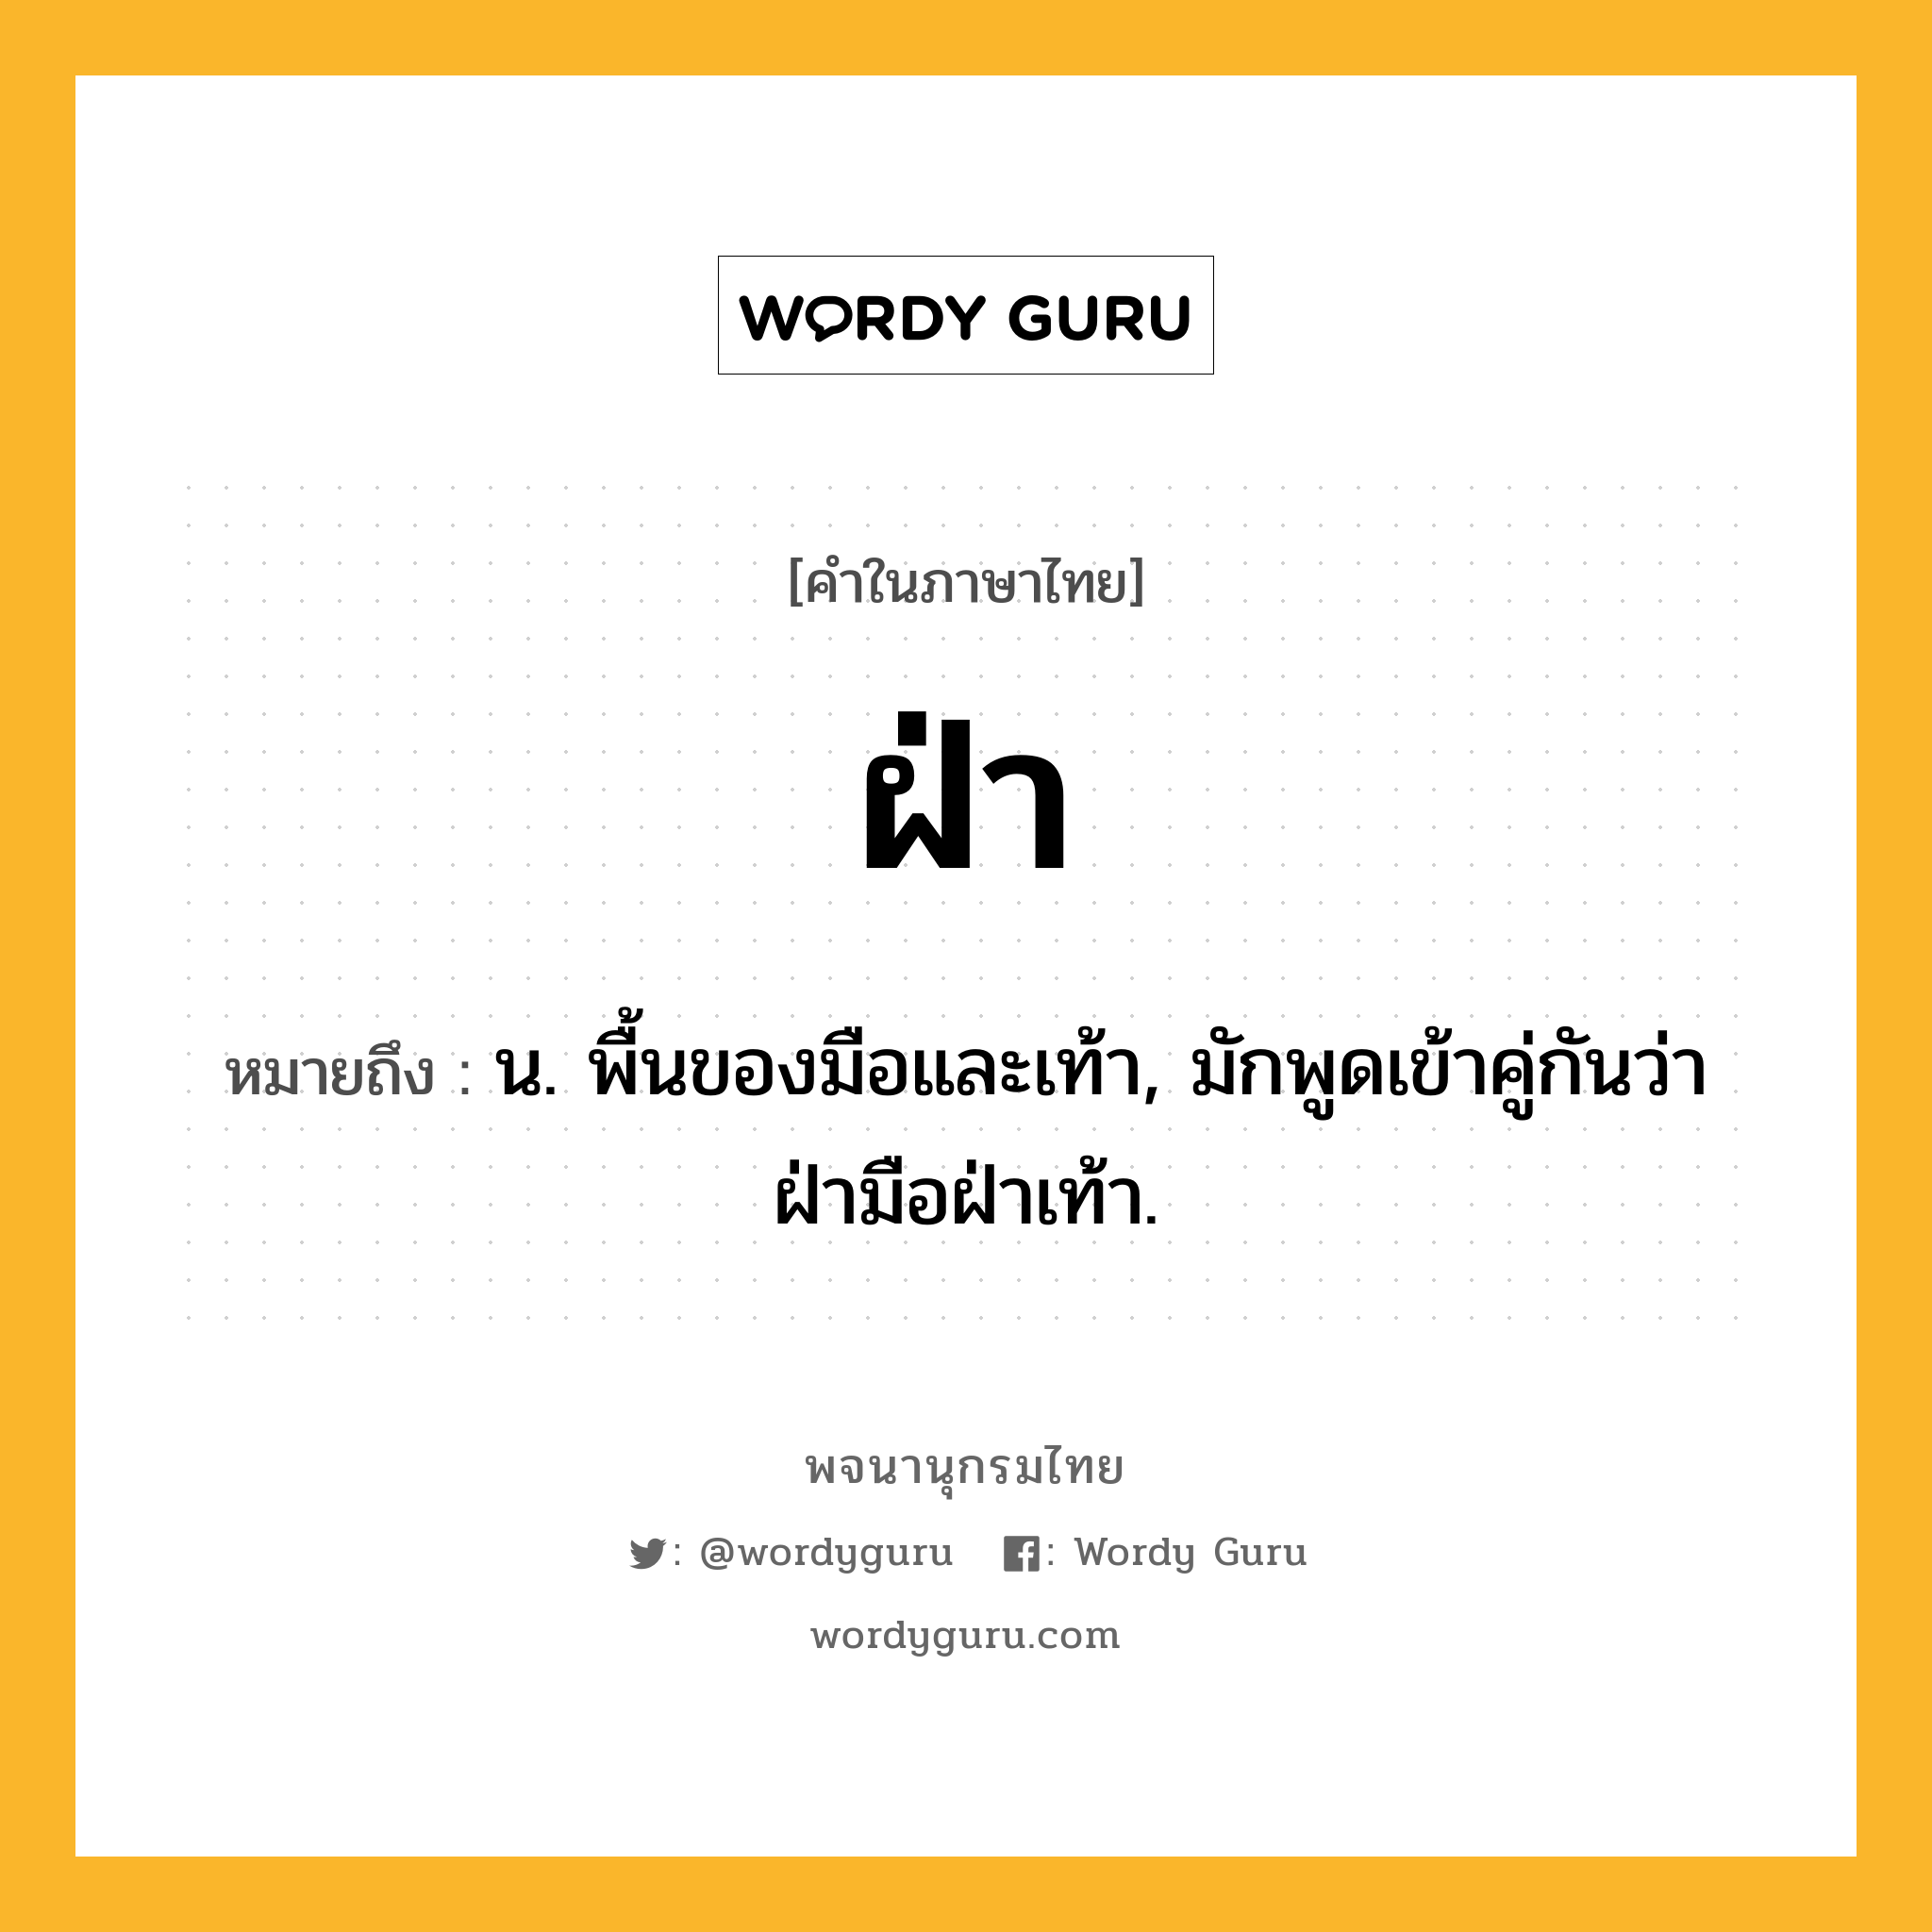 ฝ่า ความหมาย หมายถึงอะไร?, คำในภาษาไทย ฝ่า หมายถึง น. พื้นของมือและเท้า, มักพูดเข้าคู่กันว่า ฝ่ามือฝ่าเท้า.